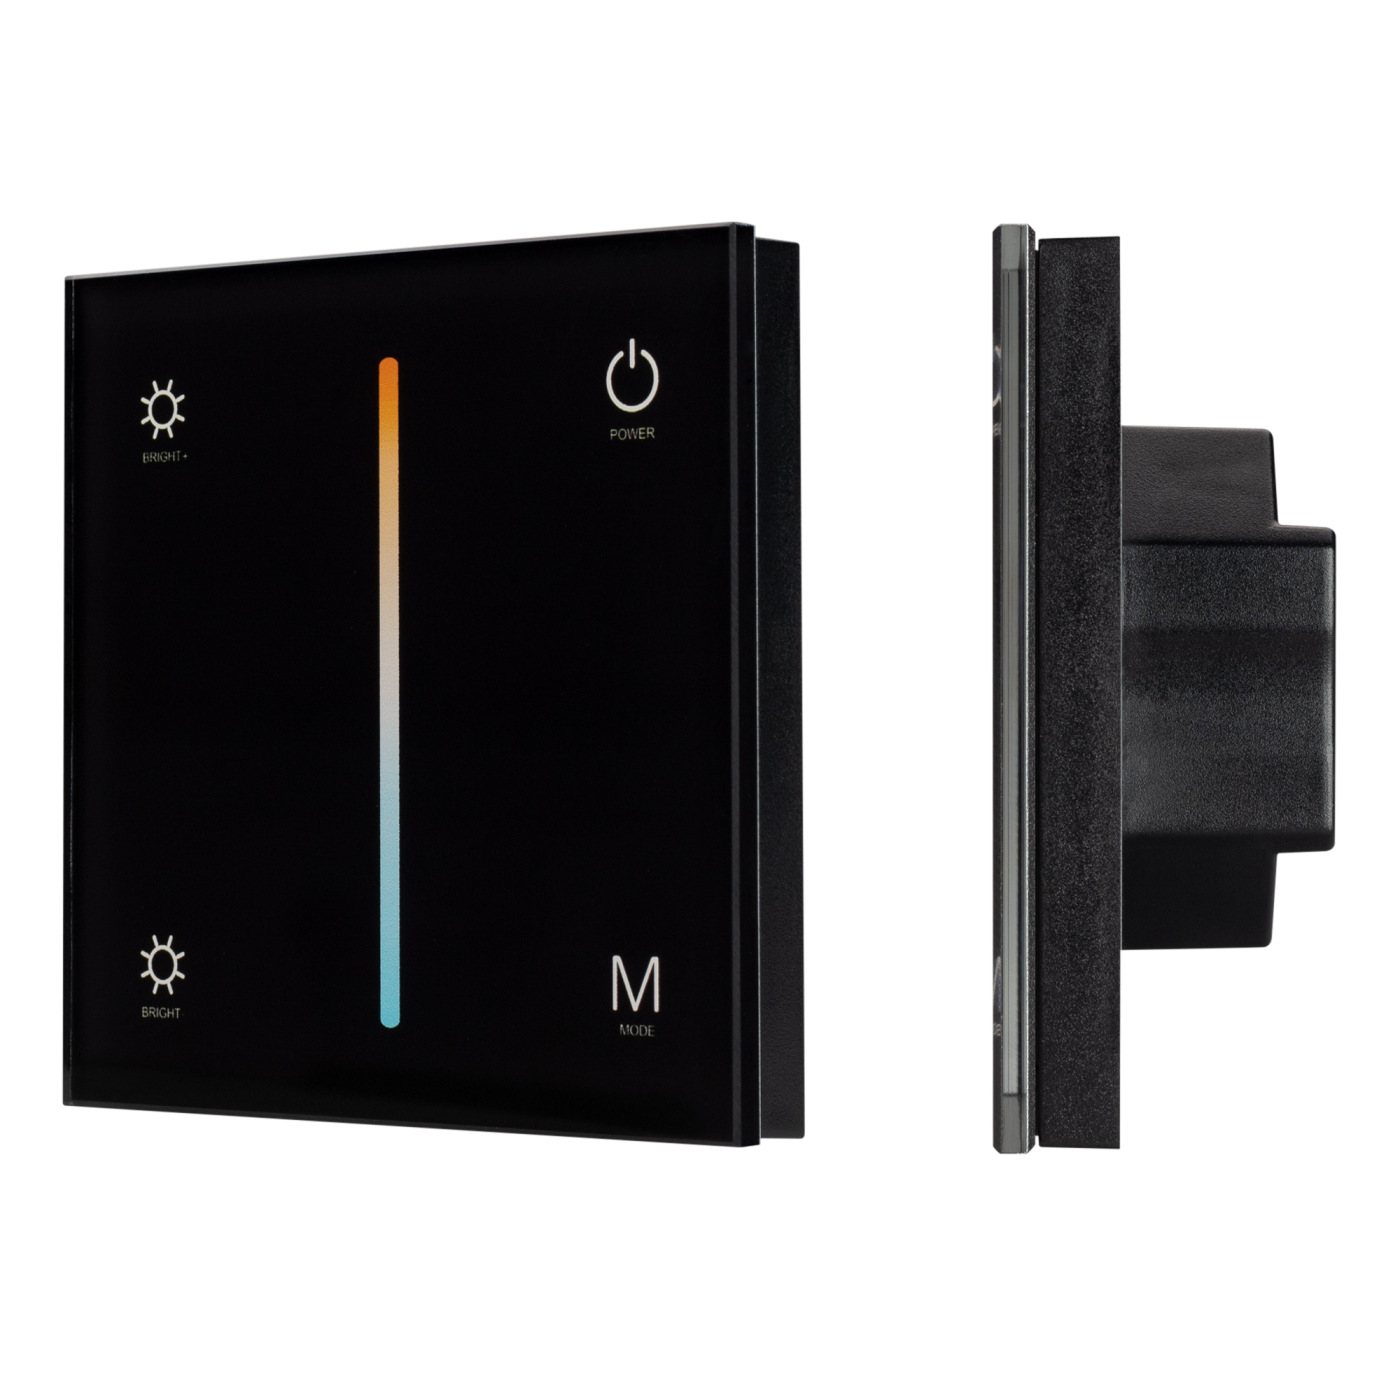 Панель SMART-P21-MIX-G-IN Black (12-24V, 4x3A, Sens, 2.4G) (Arlight, IP20 Пластик, 5 лет) сетевые фильтры isol 8 connect slave schuko 2x2 black